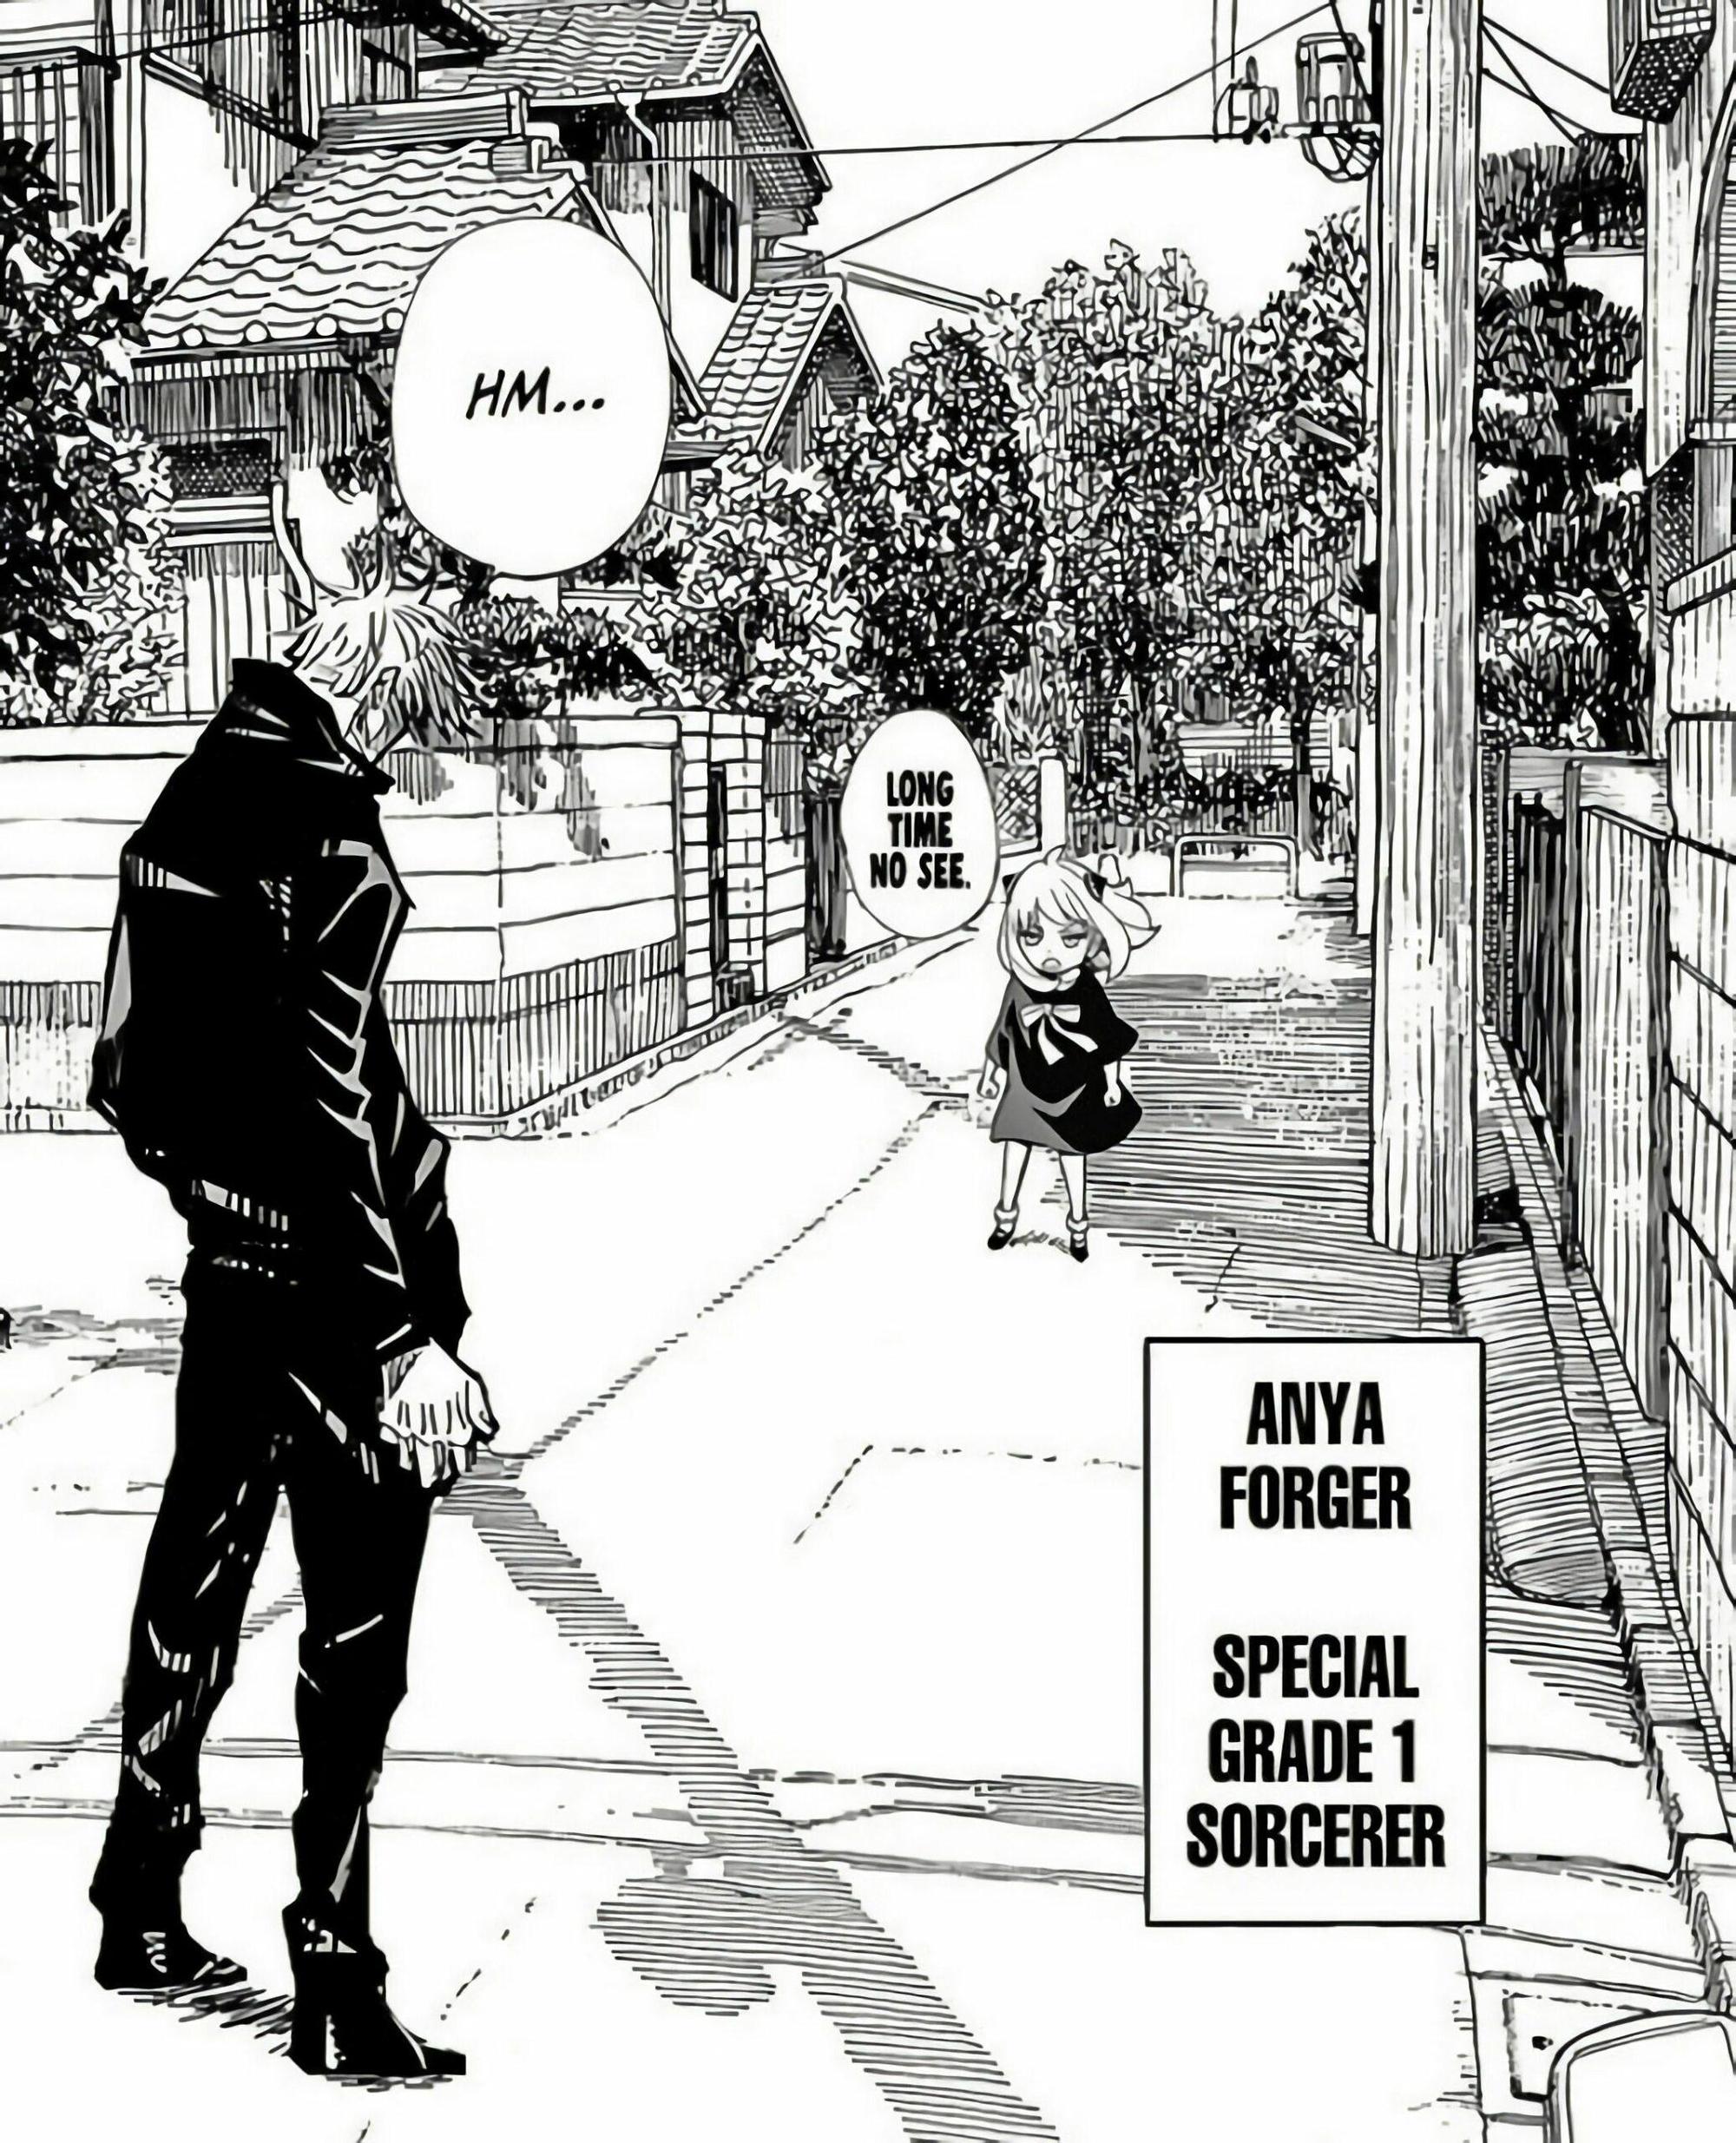 Nếu bạn yêu thích manga và chủ đề xuyên không, hãy đến và xem hình liên quan đến Anya Forger, nhân vật đầy bí ẩn. Sẽ có những bất ngờ thú vị đang chờ đợi bạn.